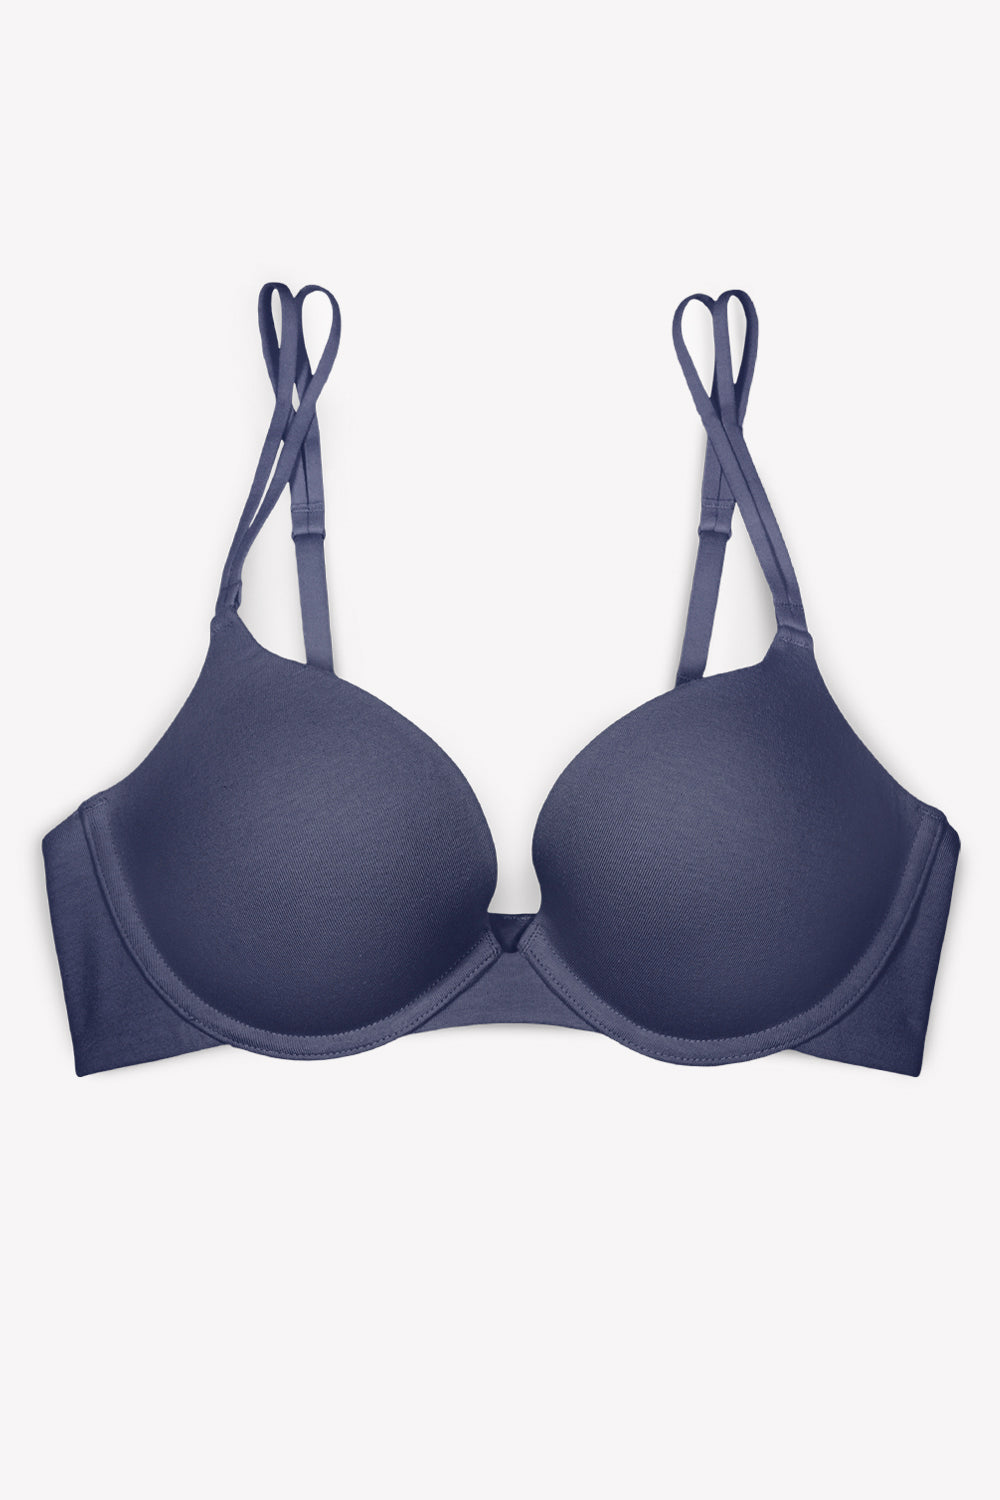 Dark blue cotton push-up bra, Bras, Women'secret